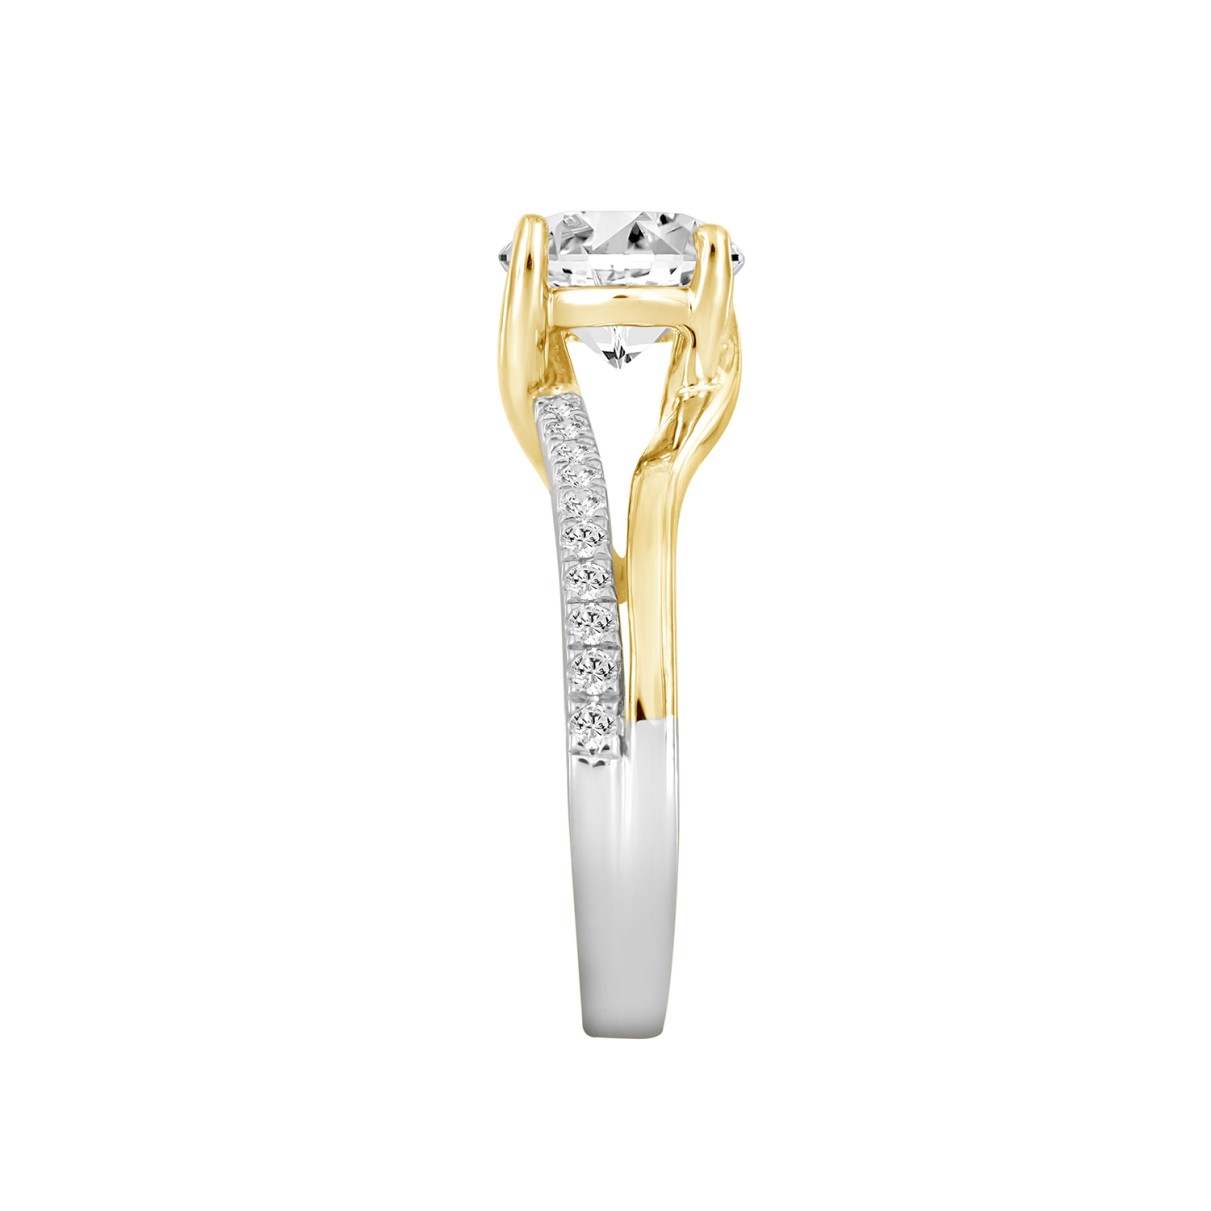 LADIES RING 2 1/4CT ROUND DIAMOND 14K WHITE/YELLOW GOLD (CENTER STONE ROUND DIAMOND 2CT )